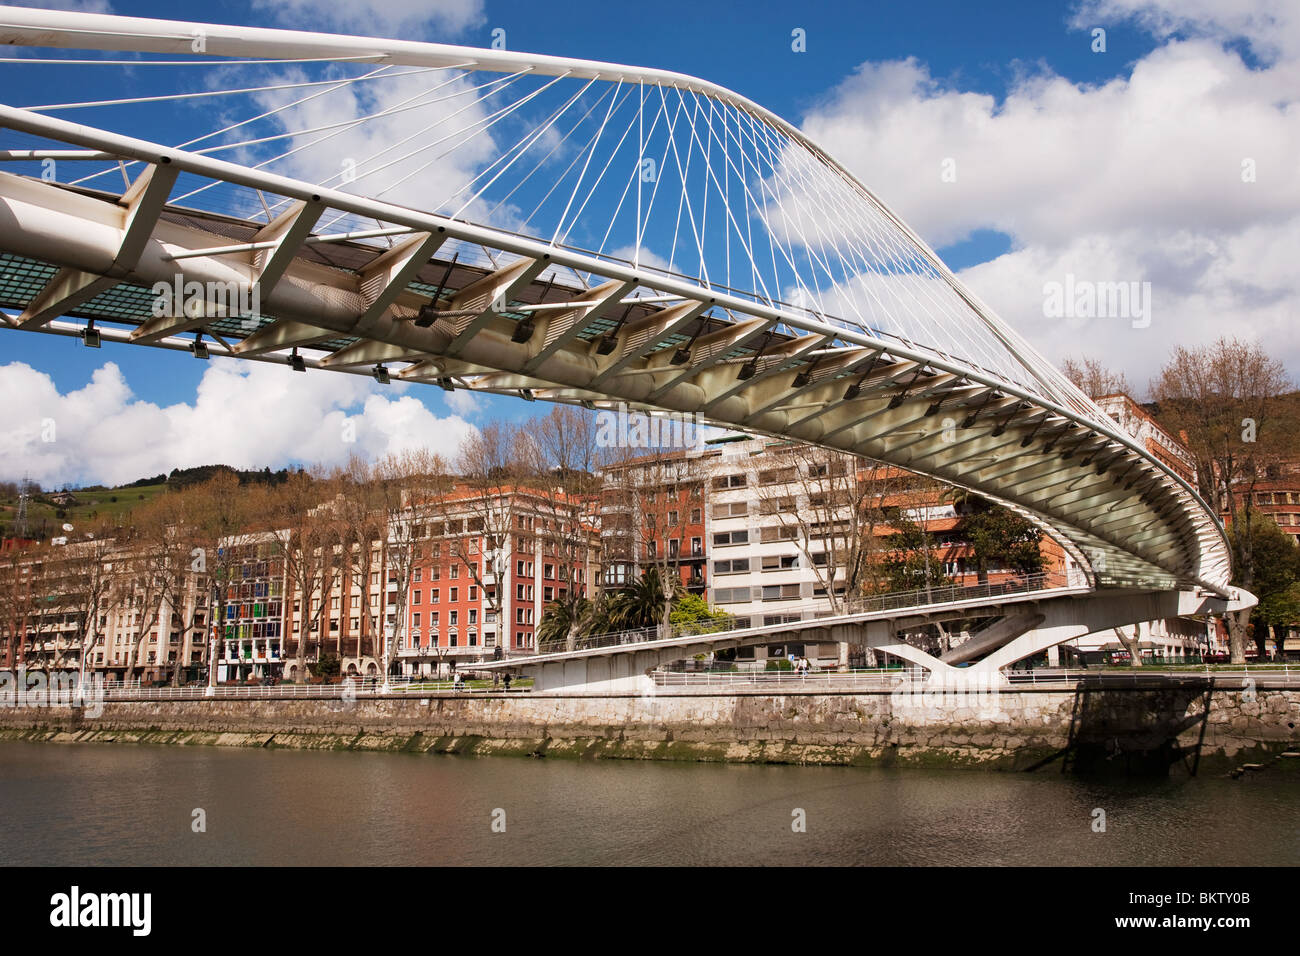 Puente Zubizuri or 'White Bridge' in Bilbao Stock Photo